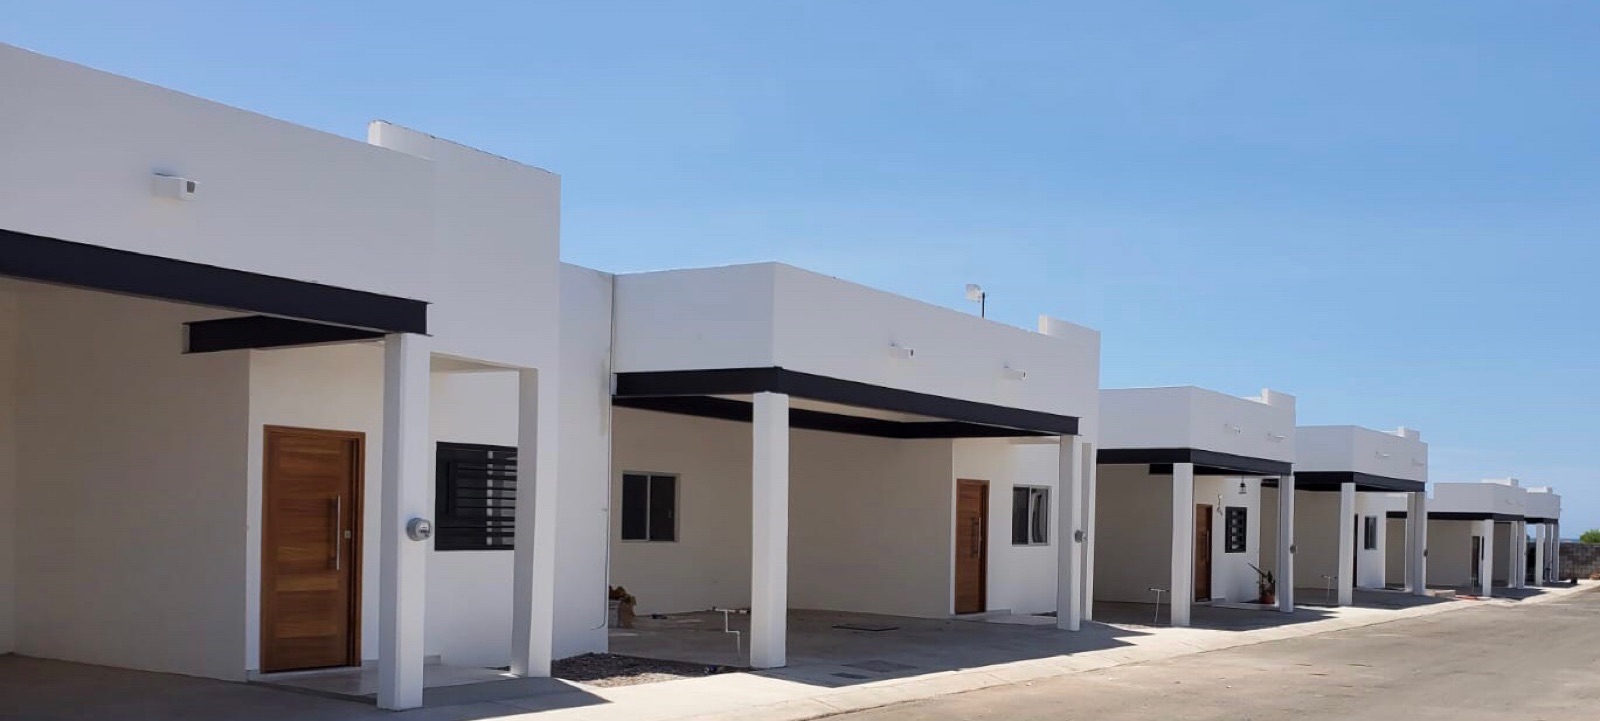 Casa - San Carlos (San Carlos Nuevo Guaymas)